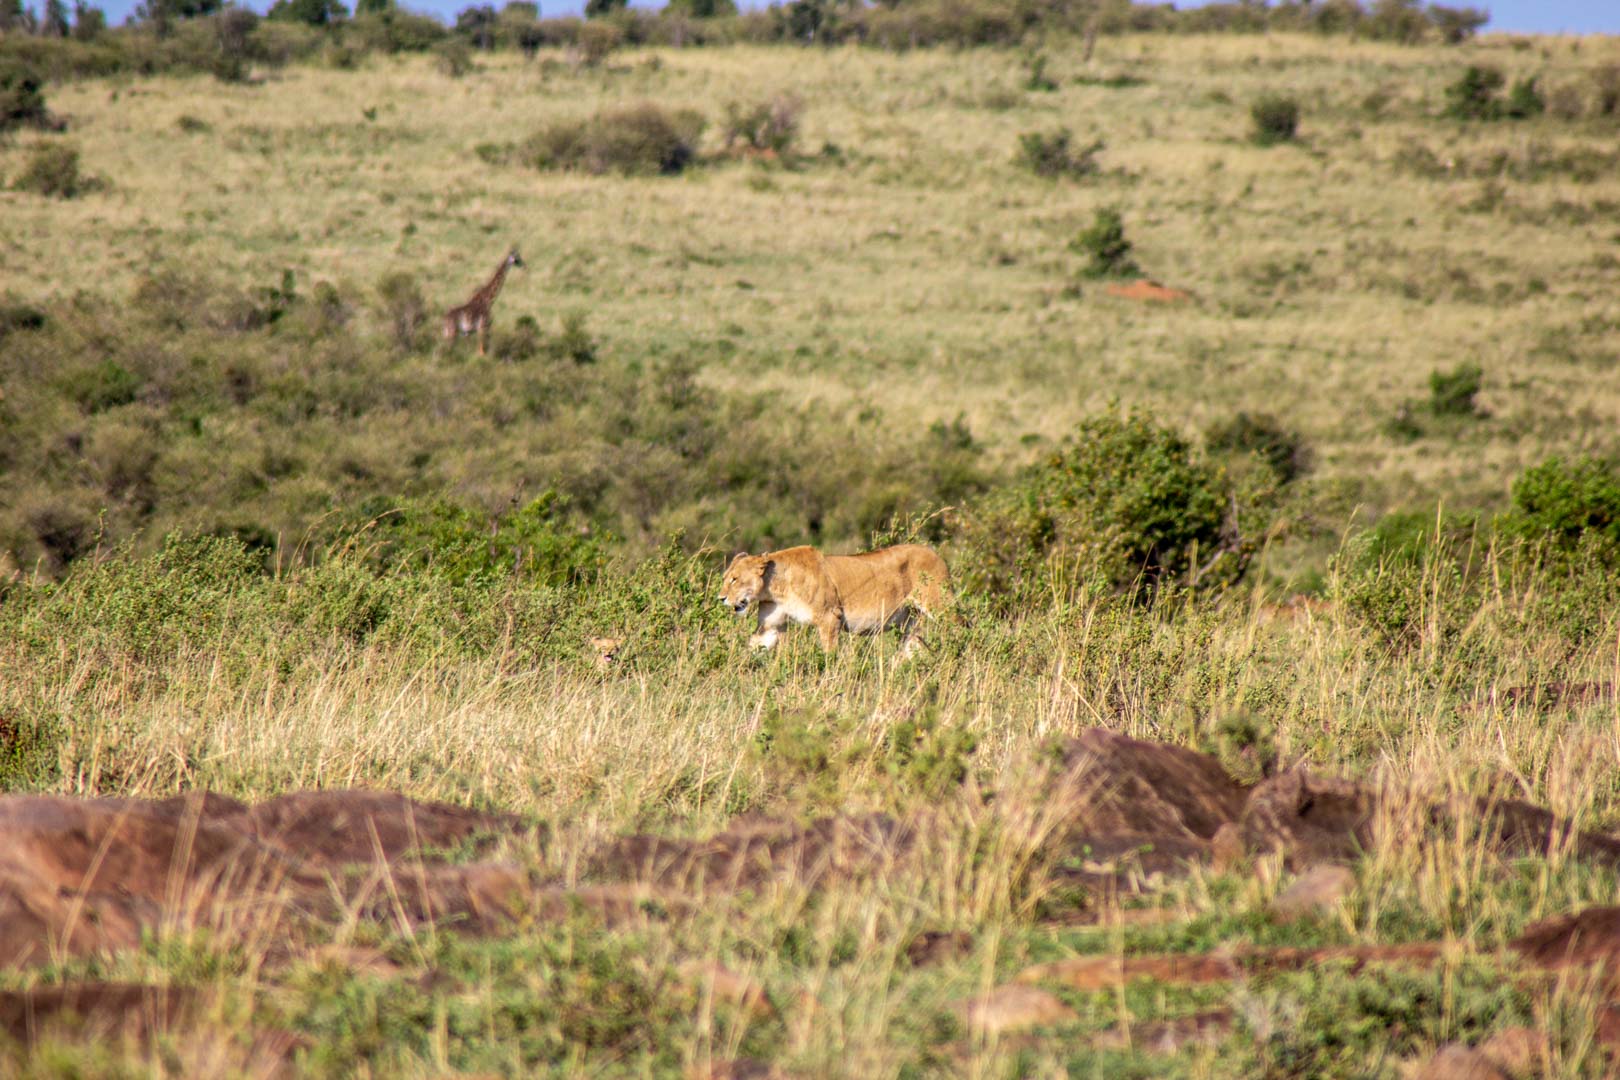 Leona con su león bebé, Masai Mara, Kenia